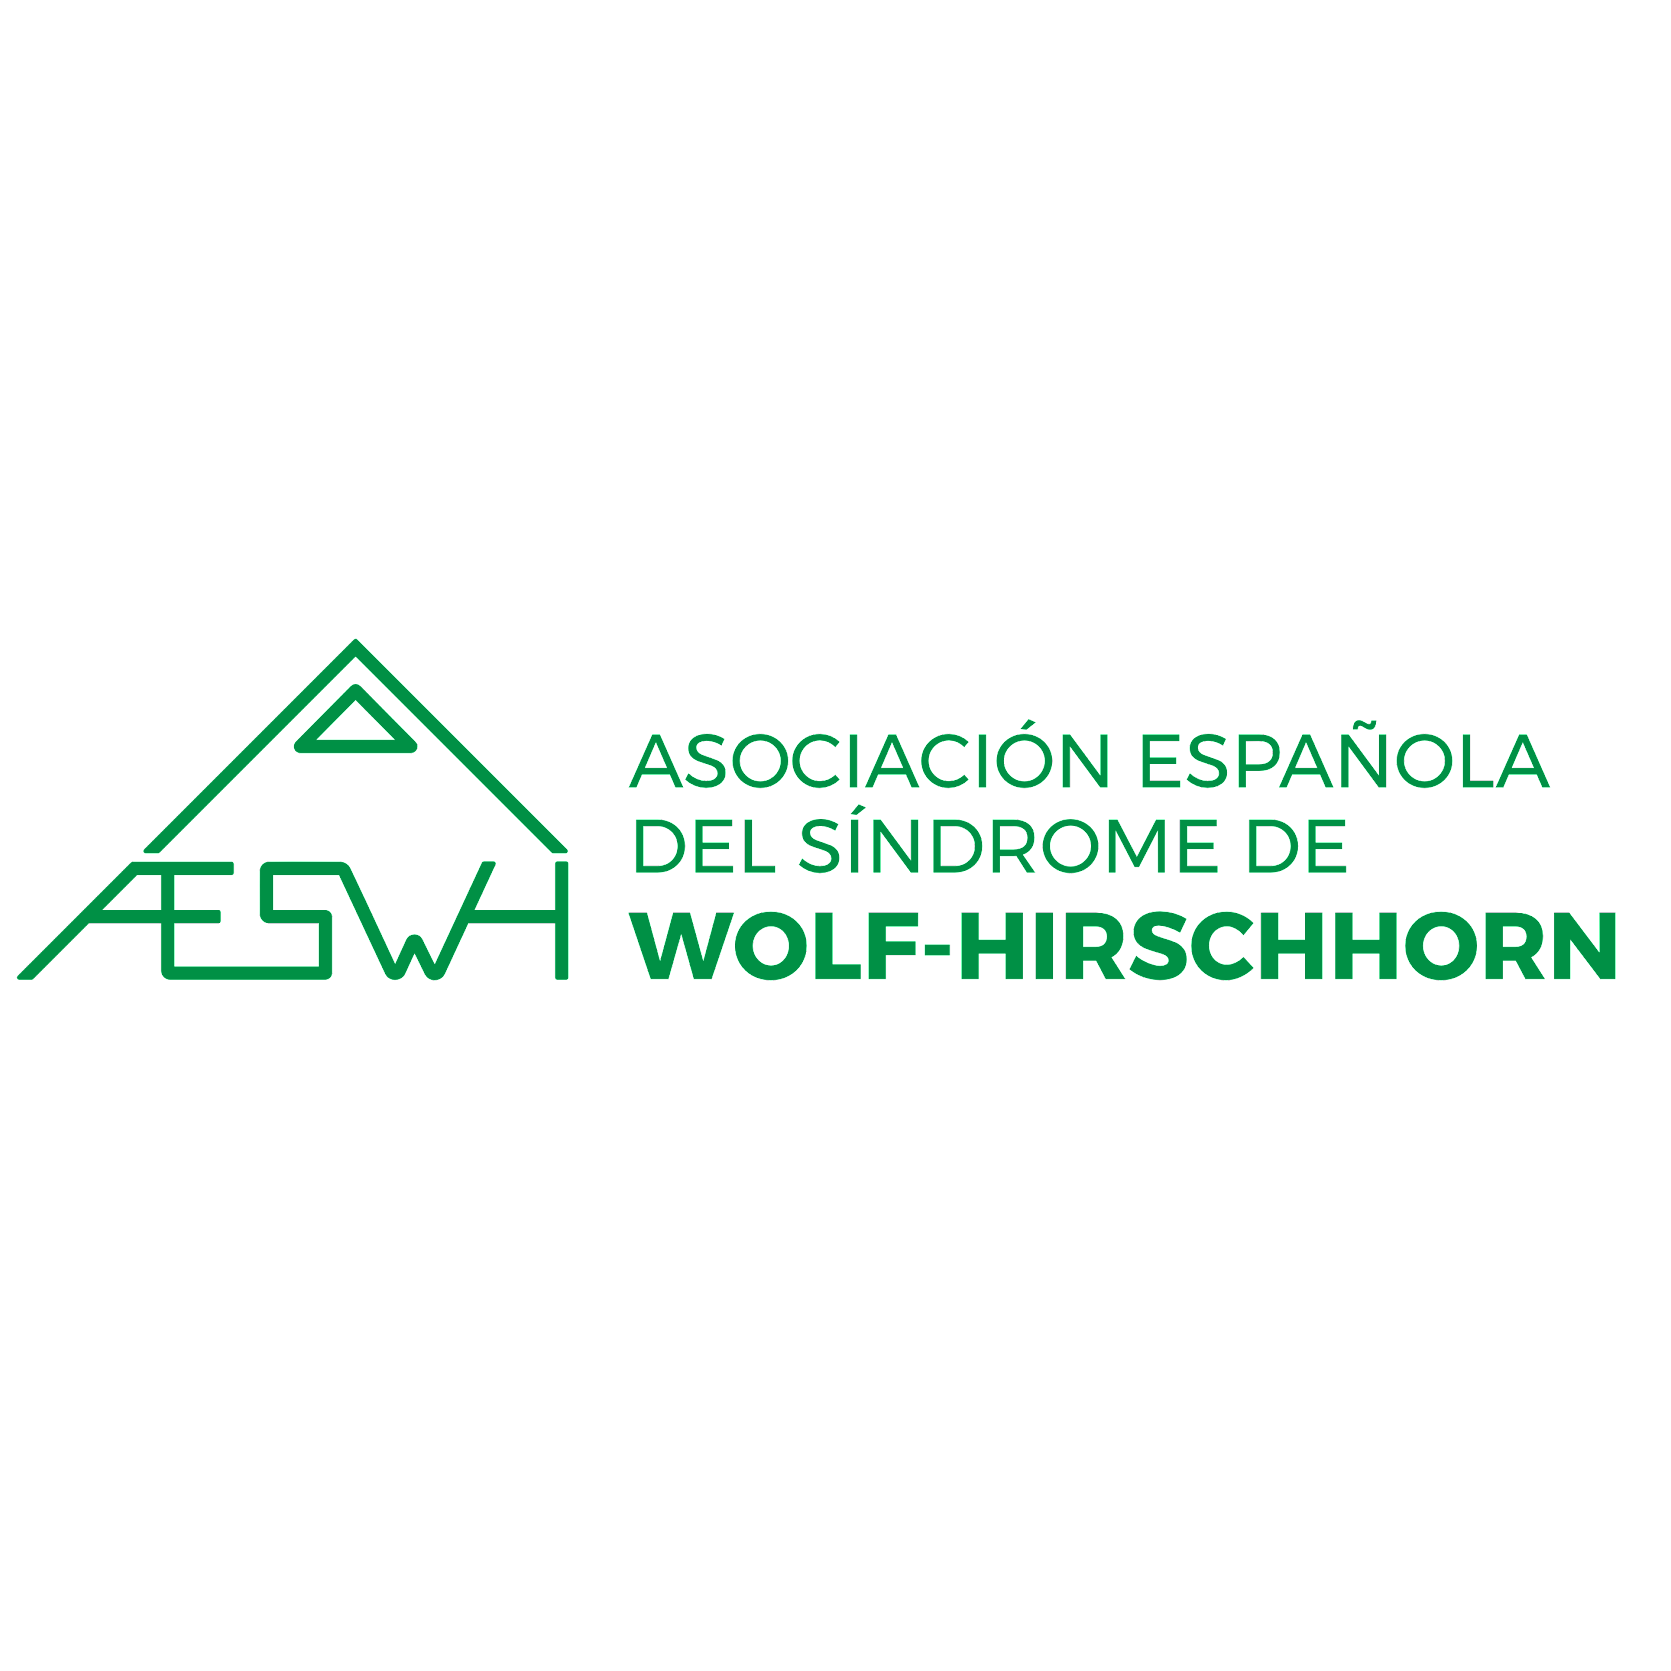 AESWH - Asociación Española del Síndrome de Wolf-Hirschhorn